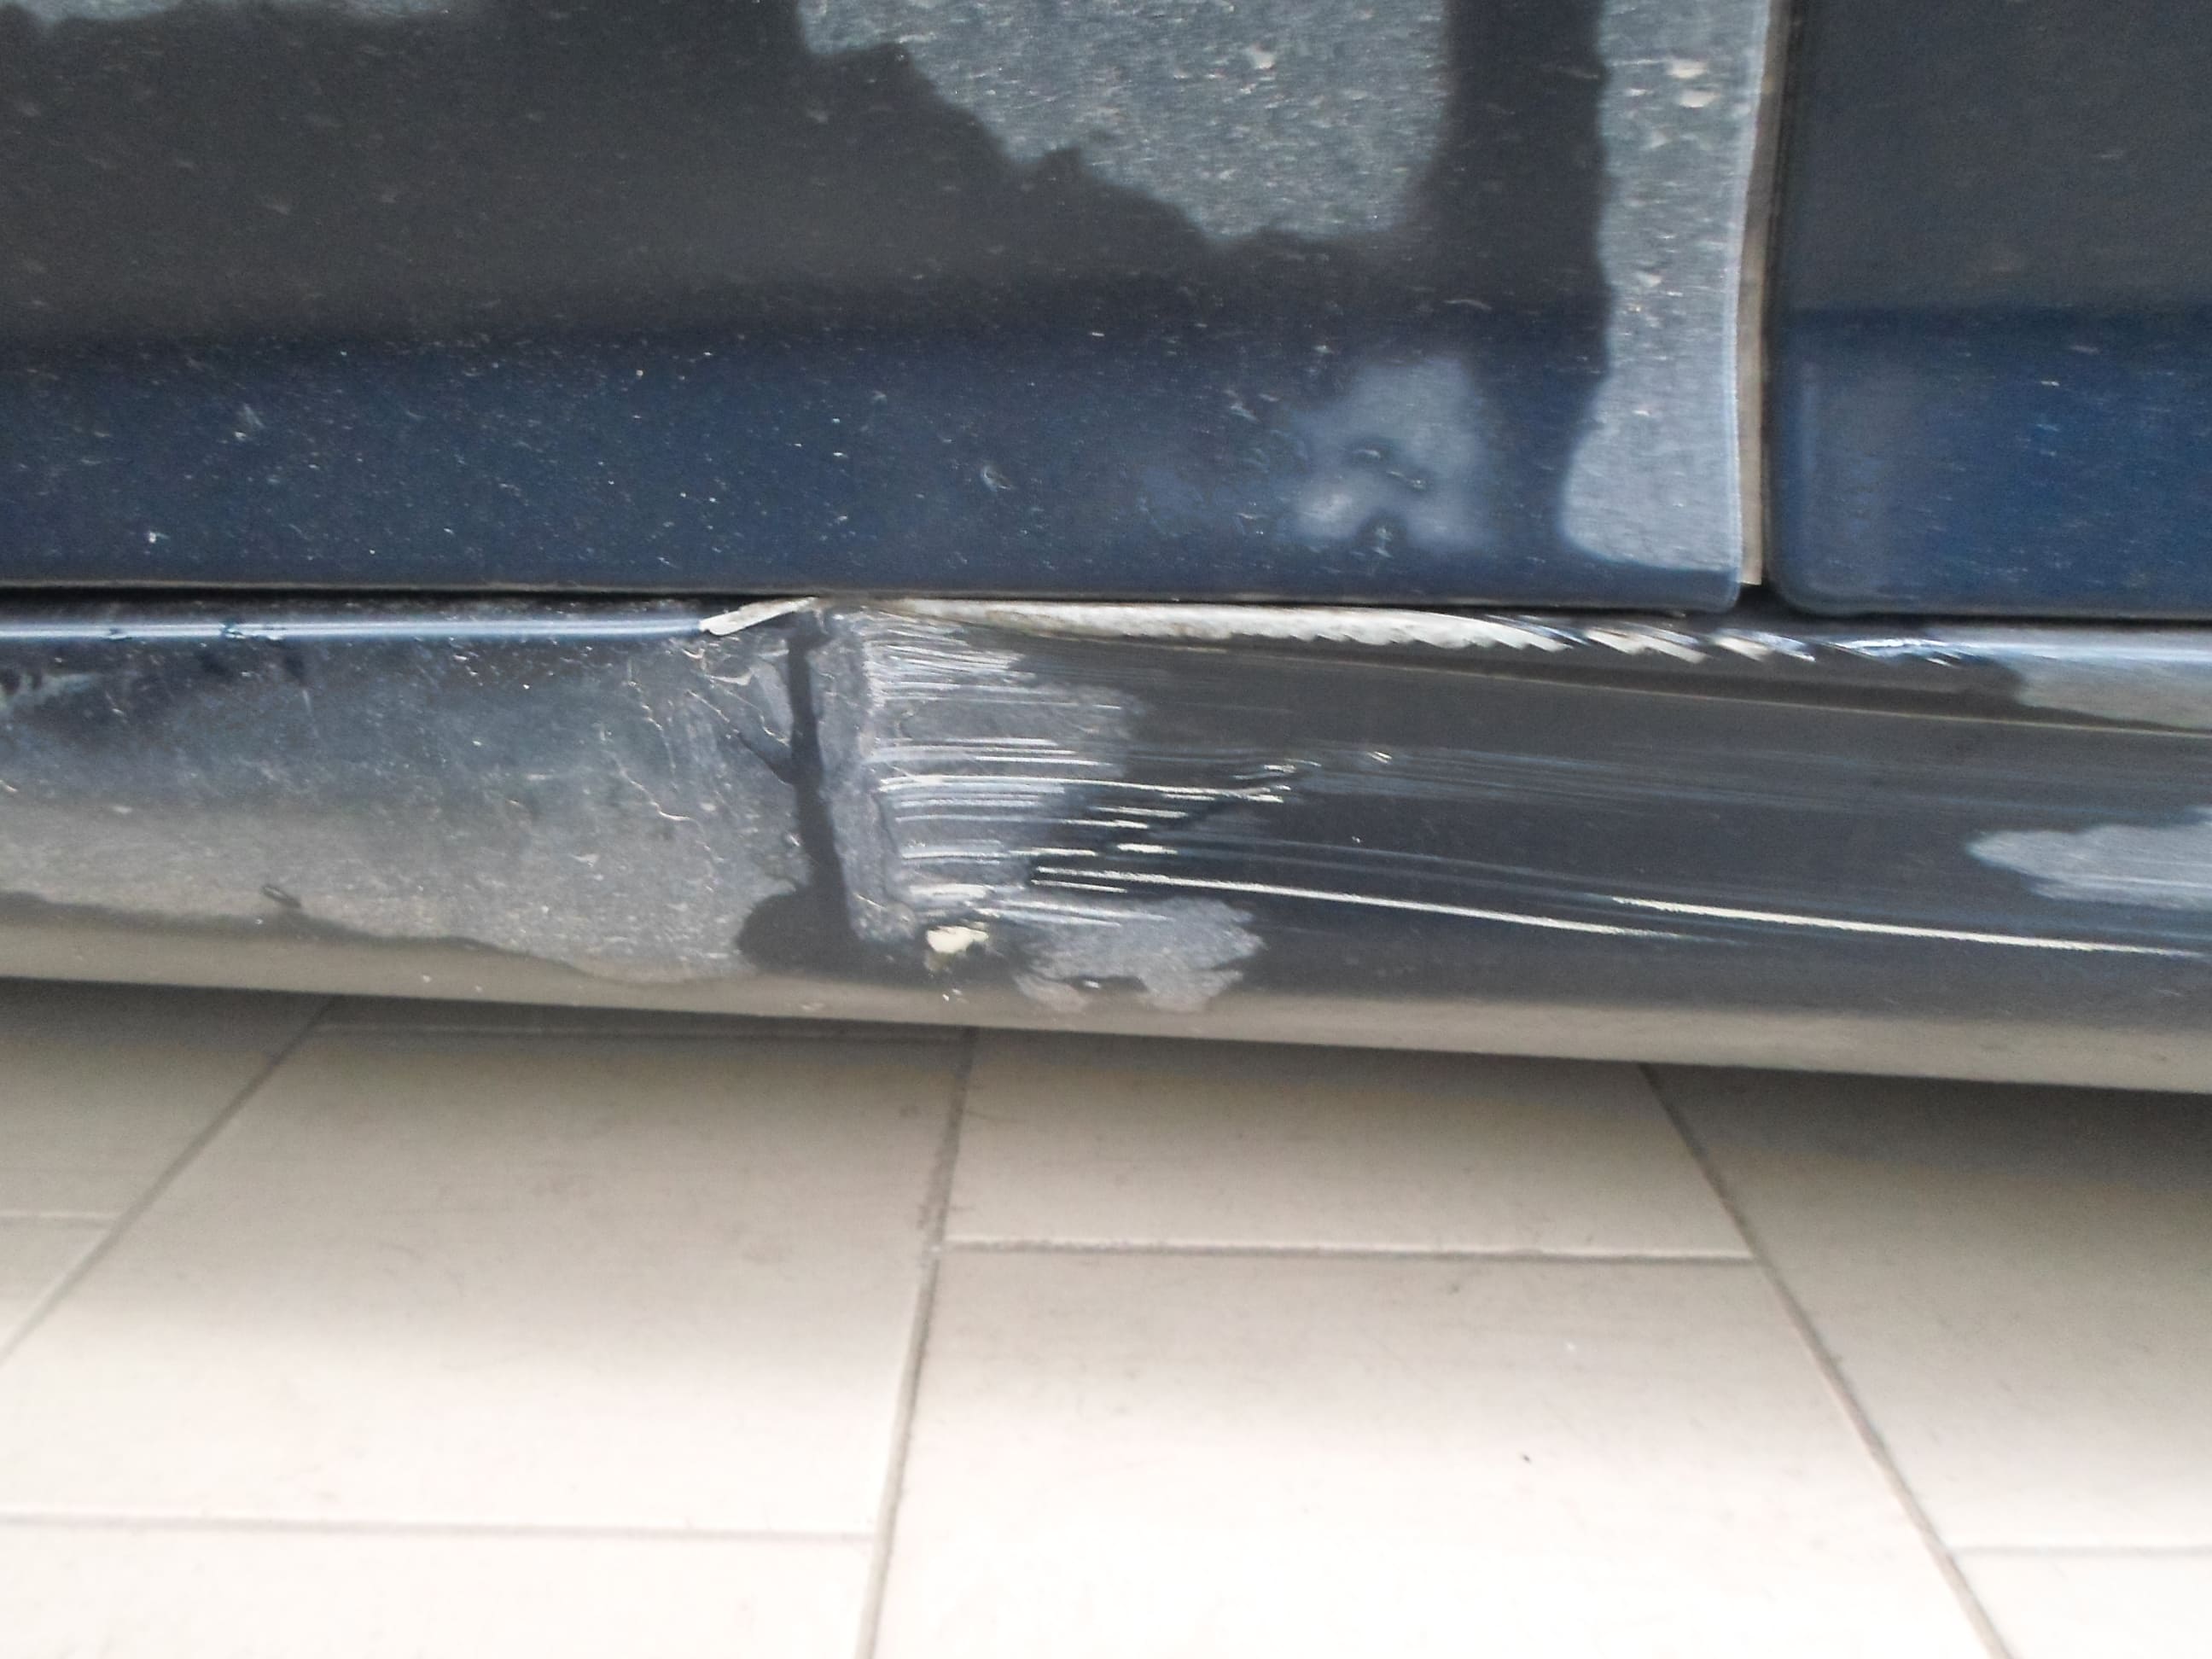 покраска авто Peugeot 308 ремонт порога в СПБ